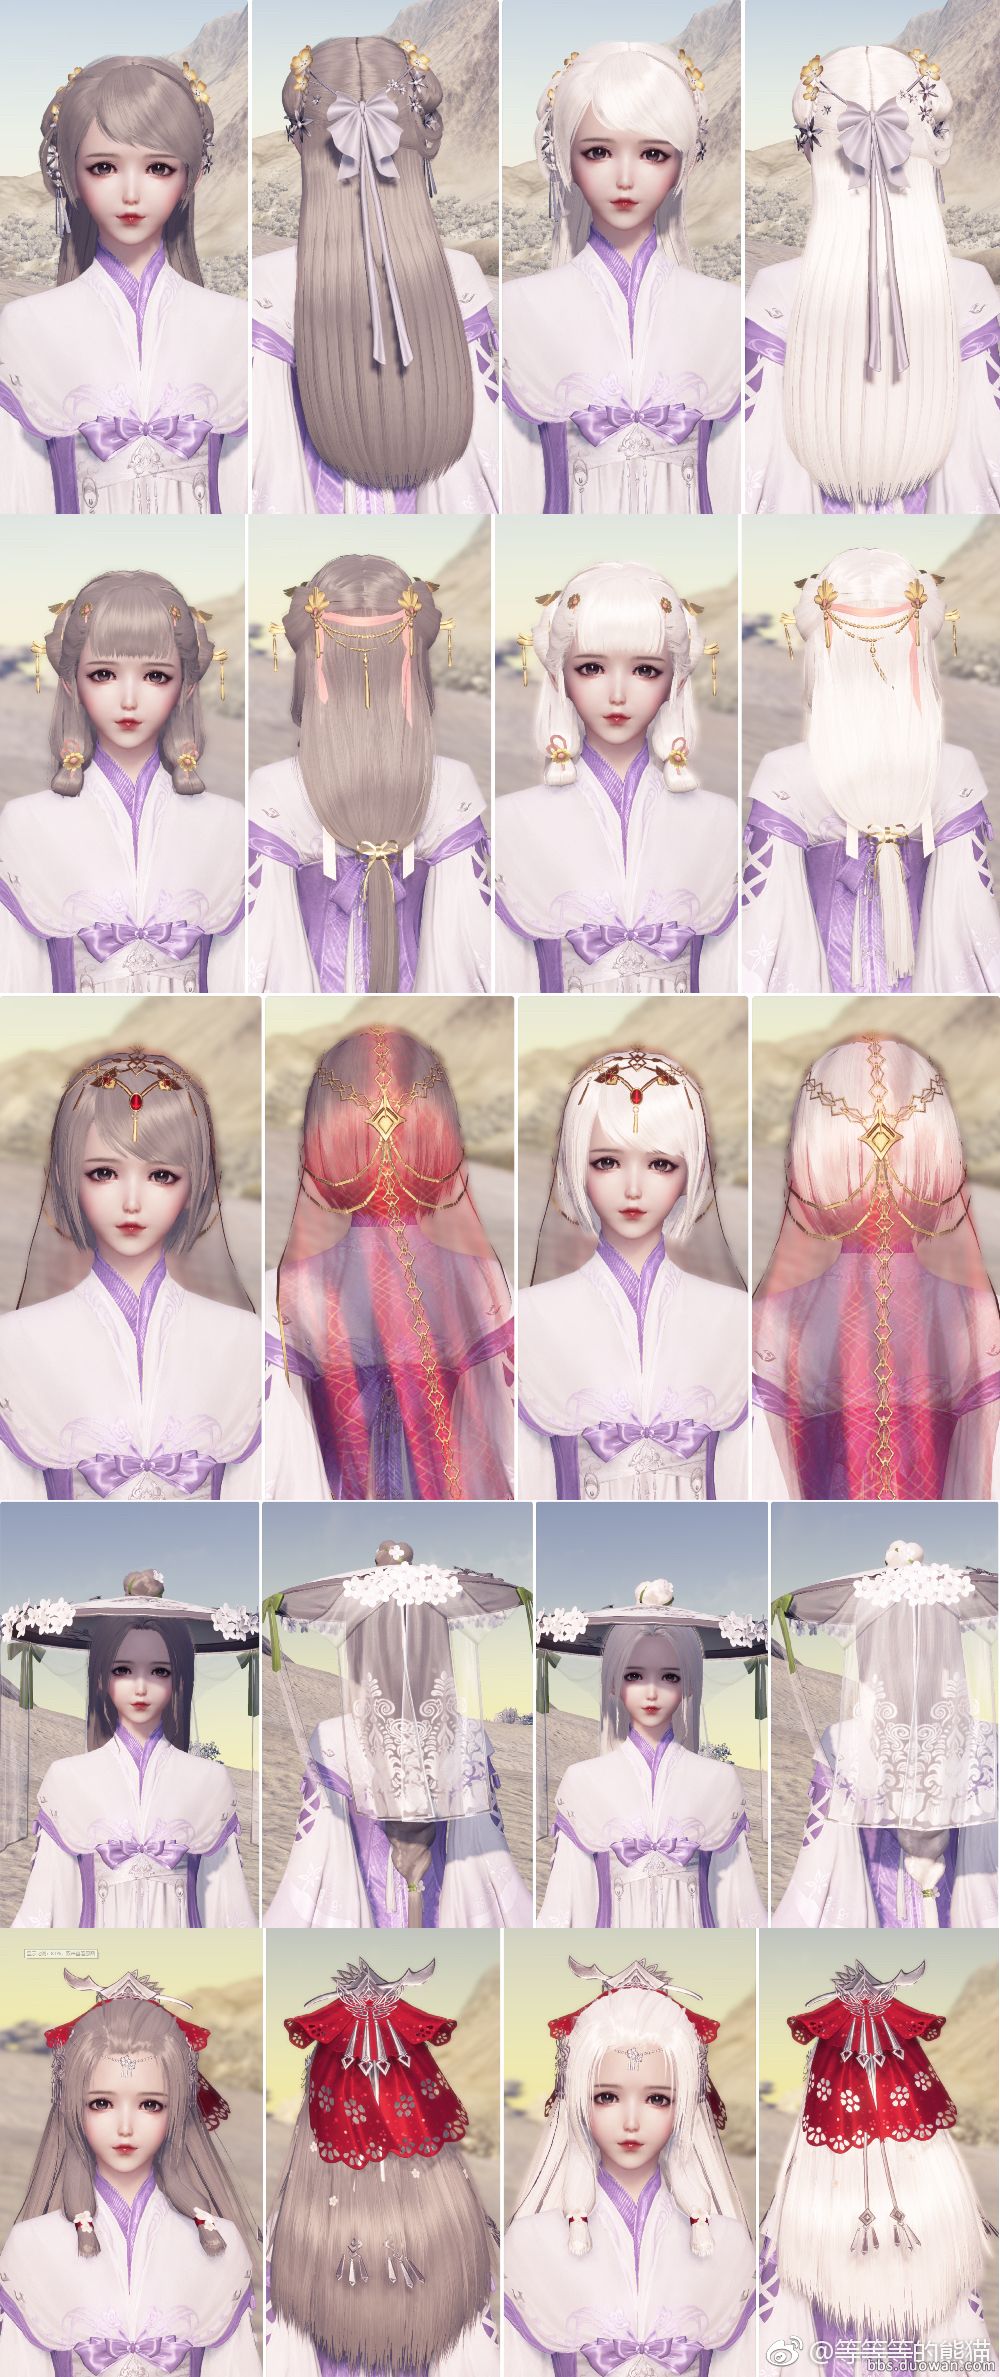 《天涯明月刀》全新24款头发染色造型